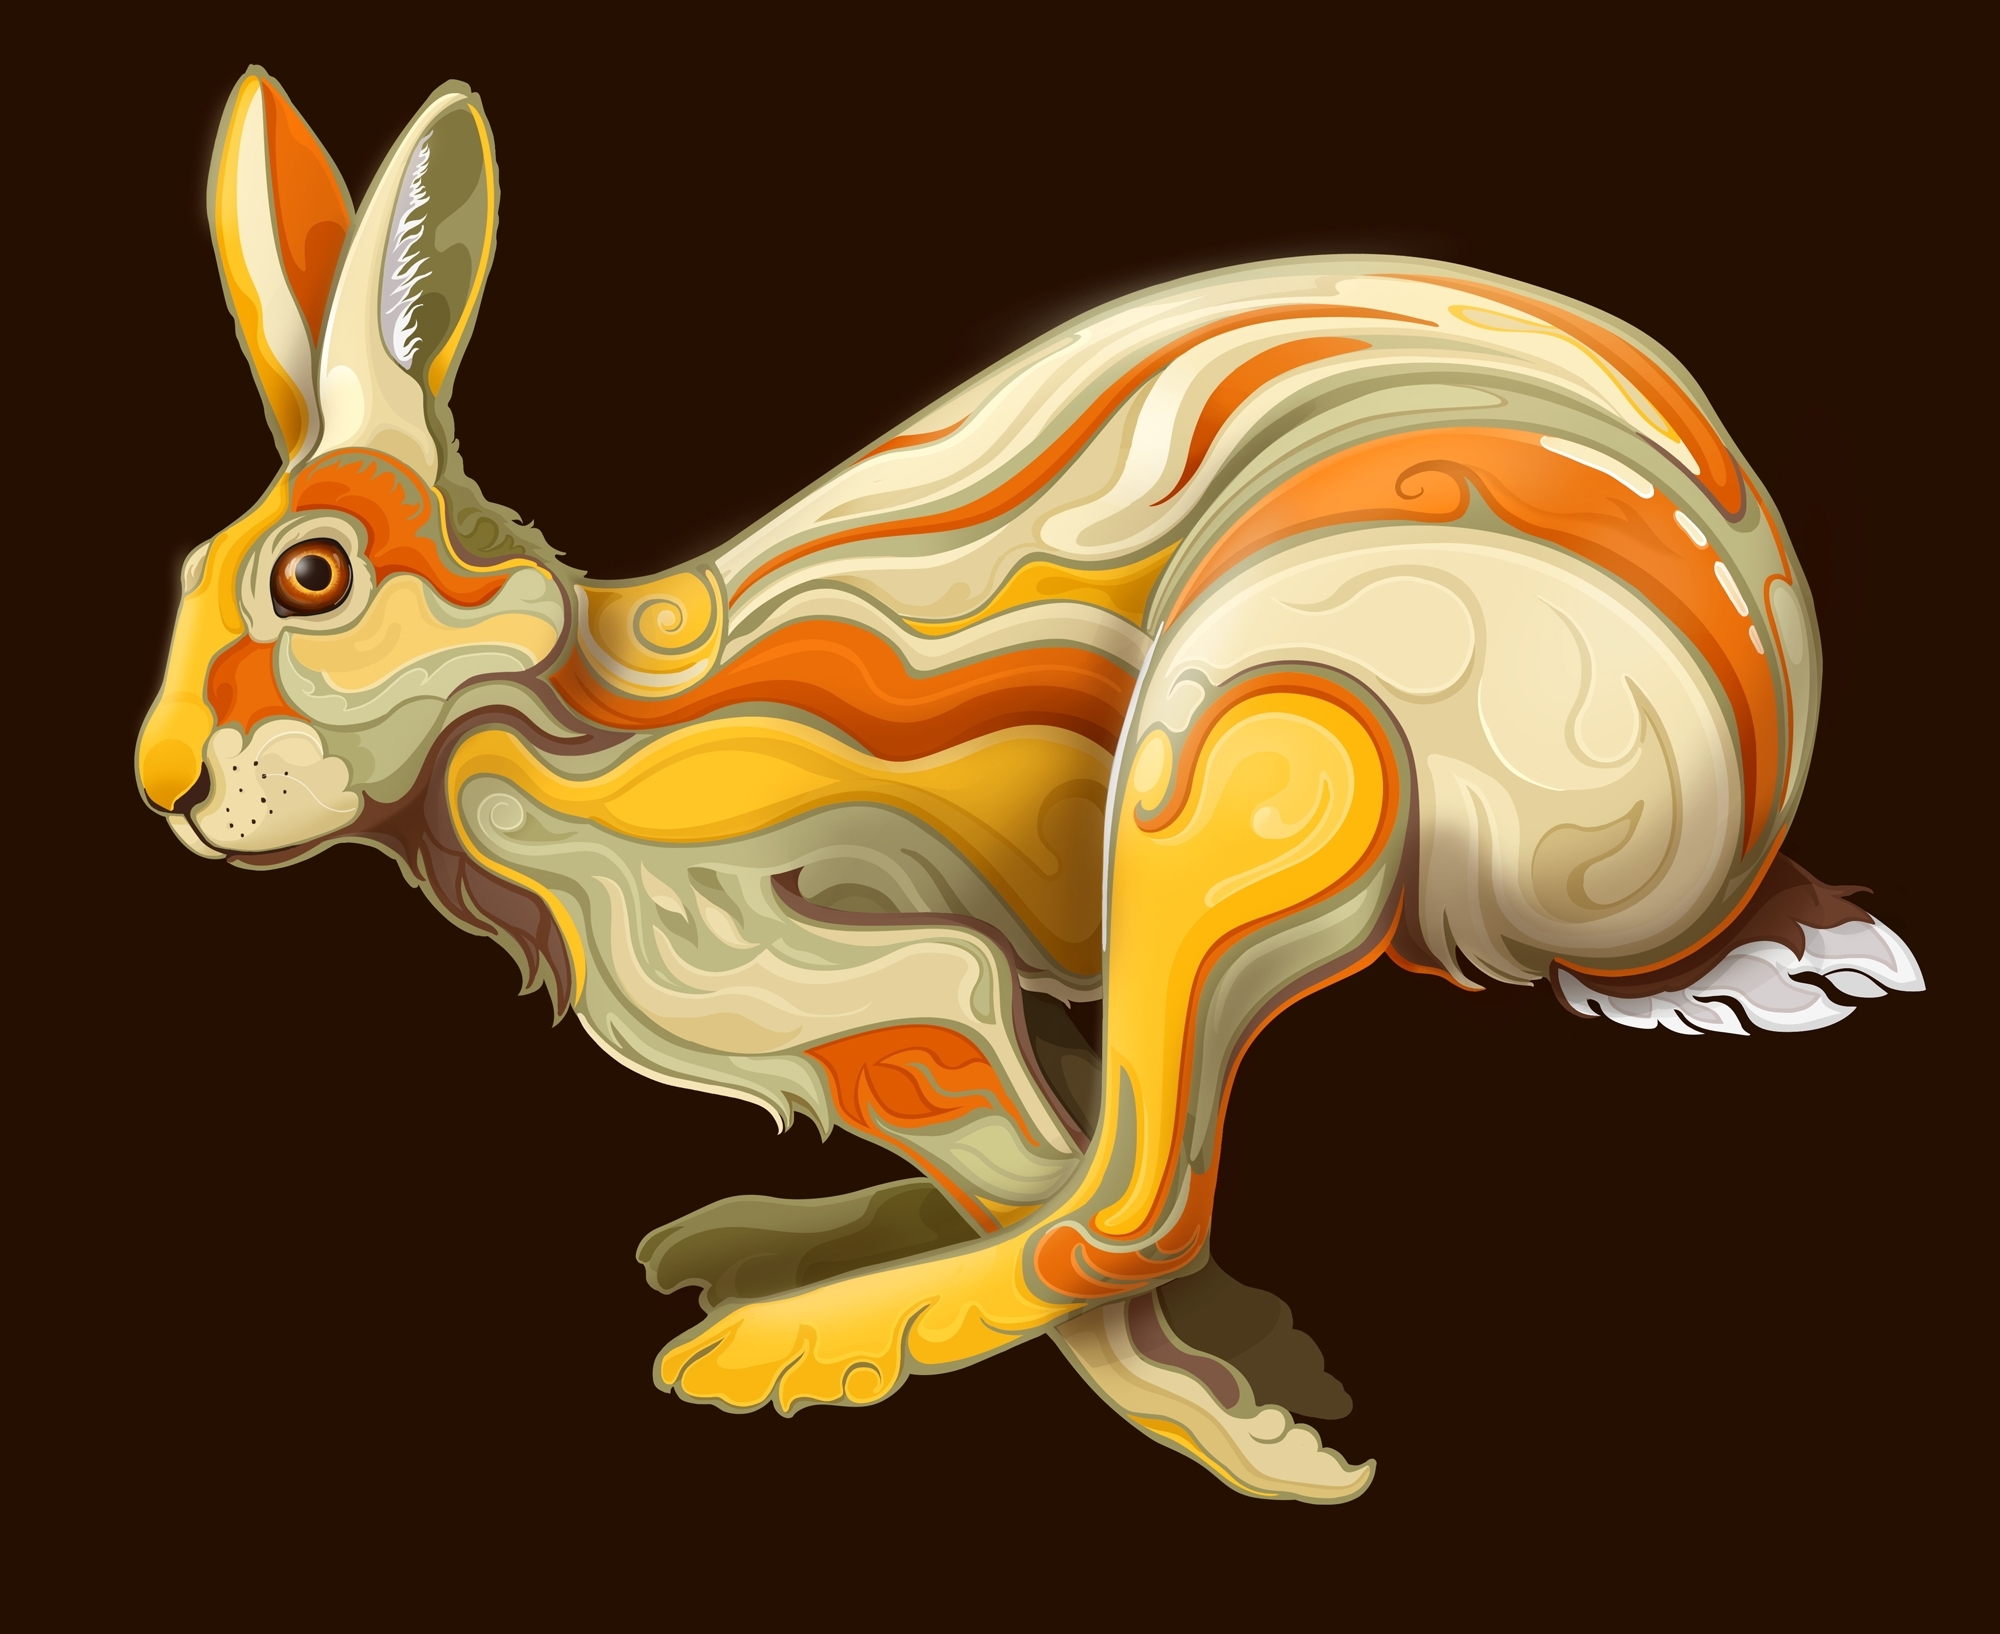 Hare.jpg